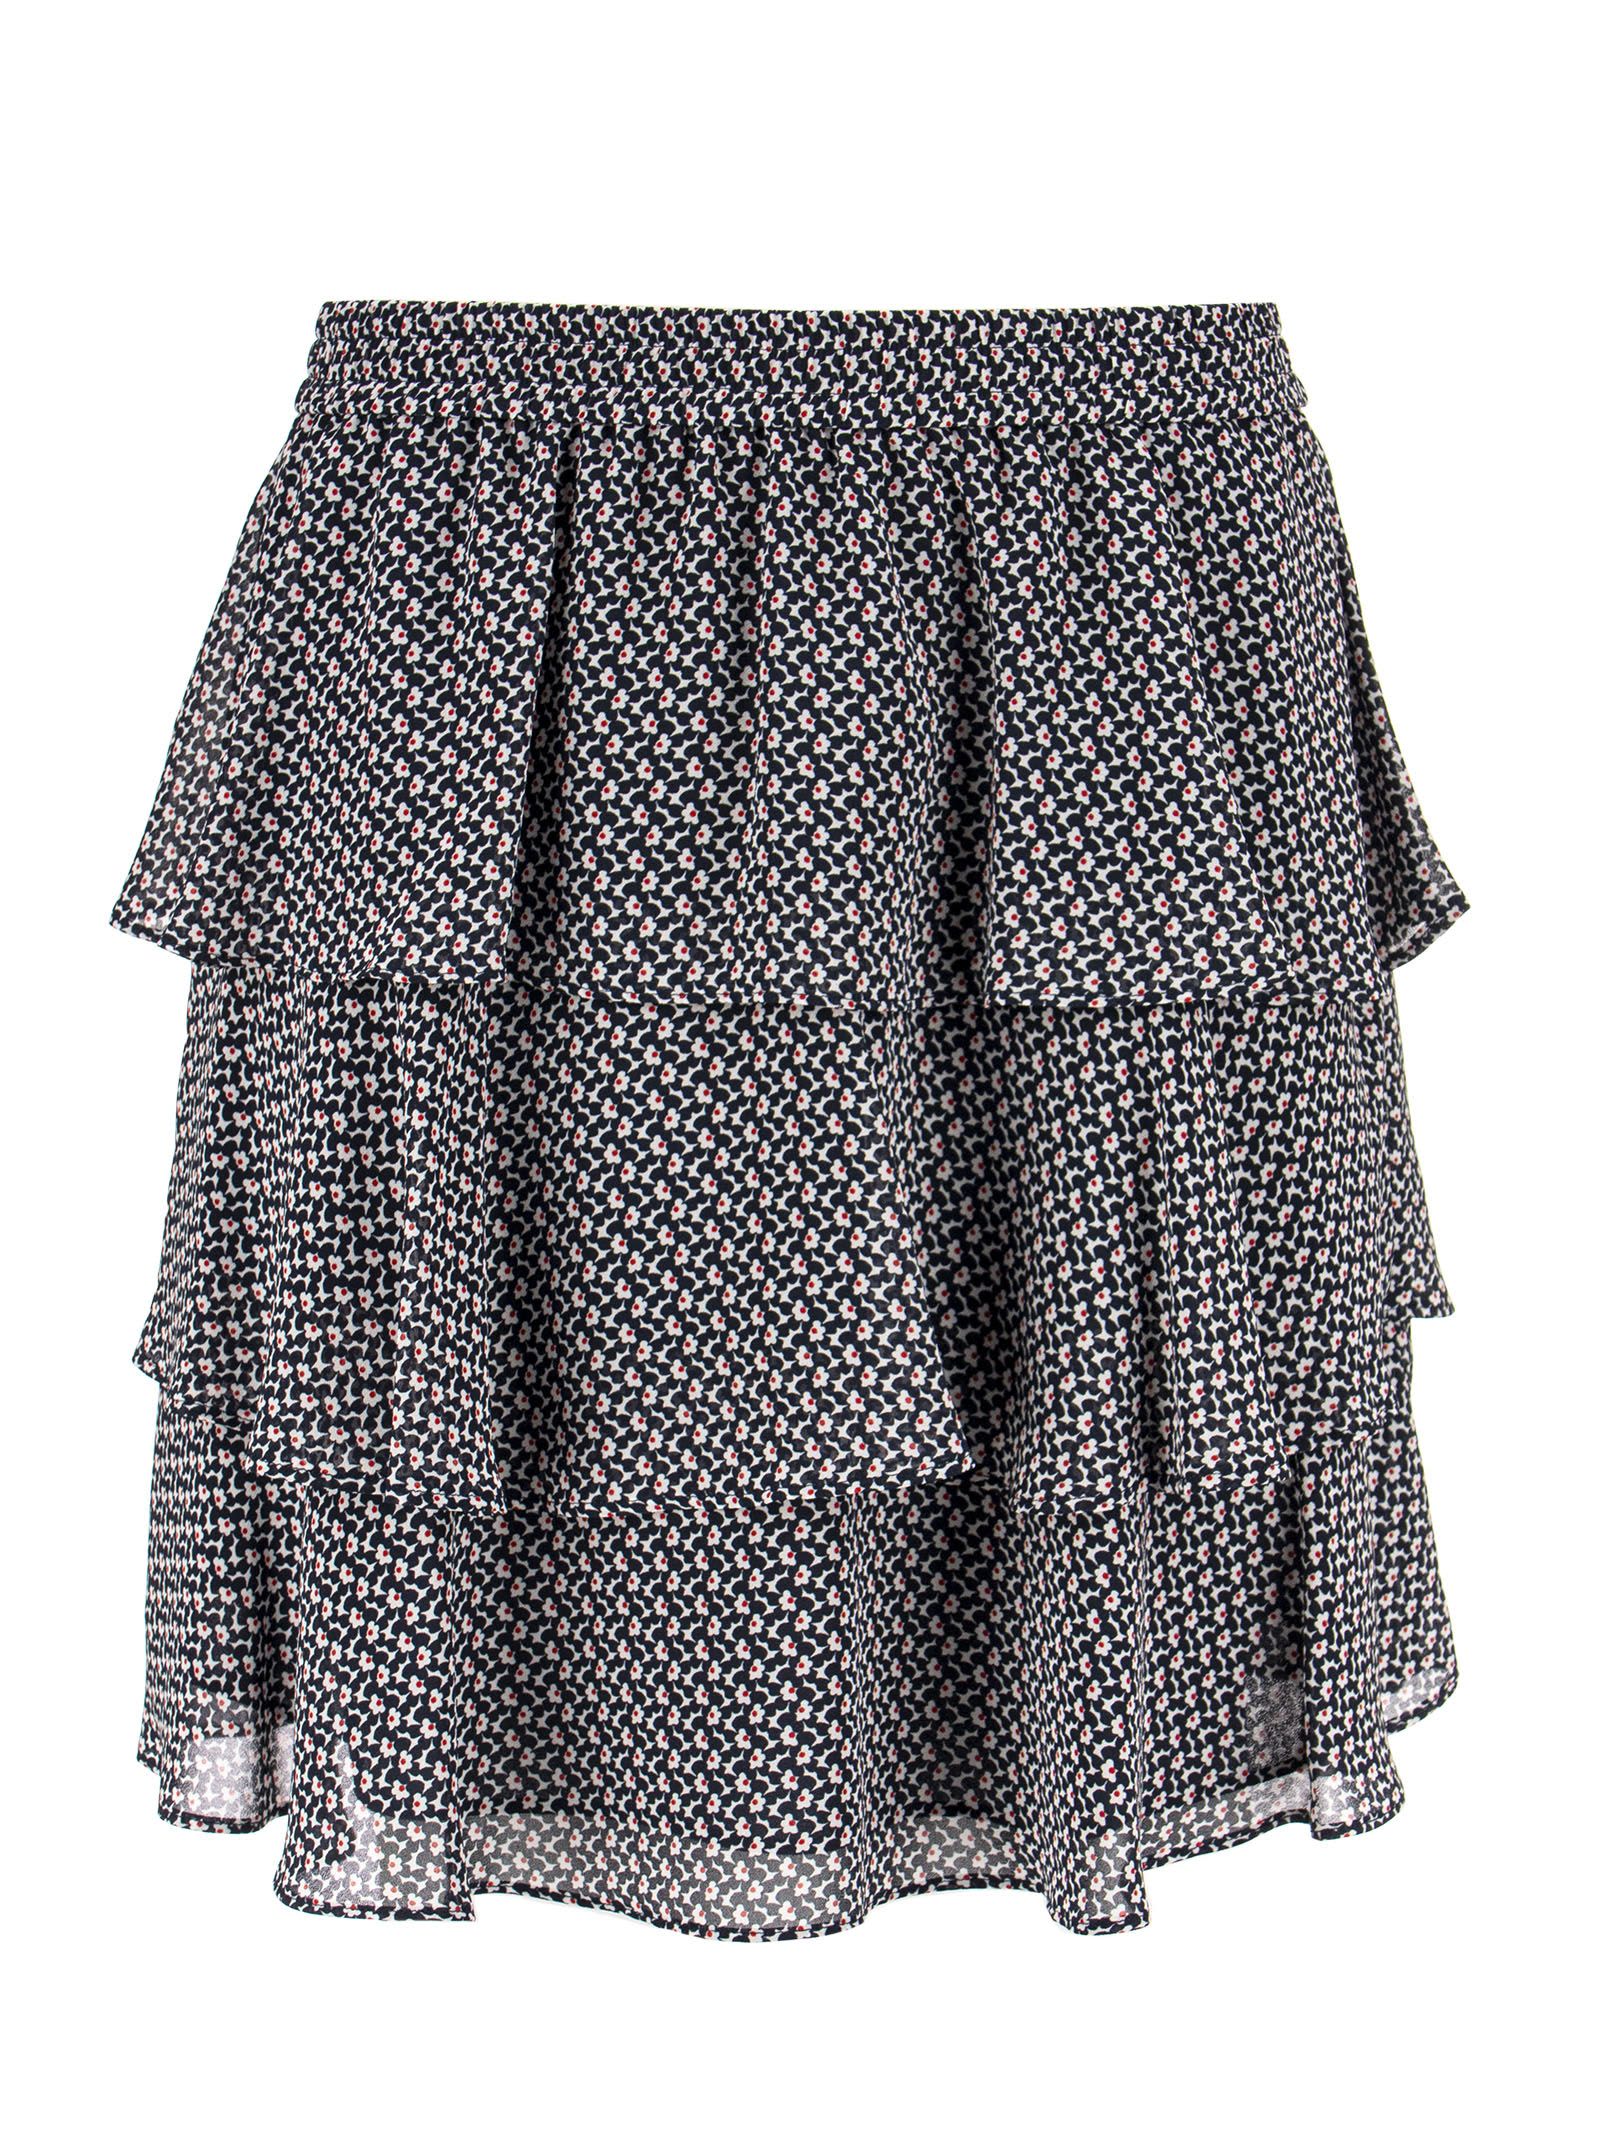 Michael Kors Mini Skirt With Flounces